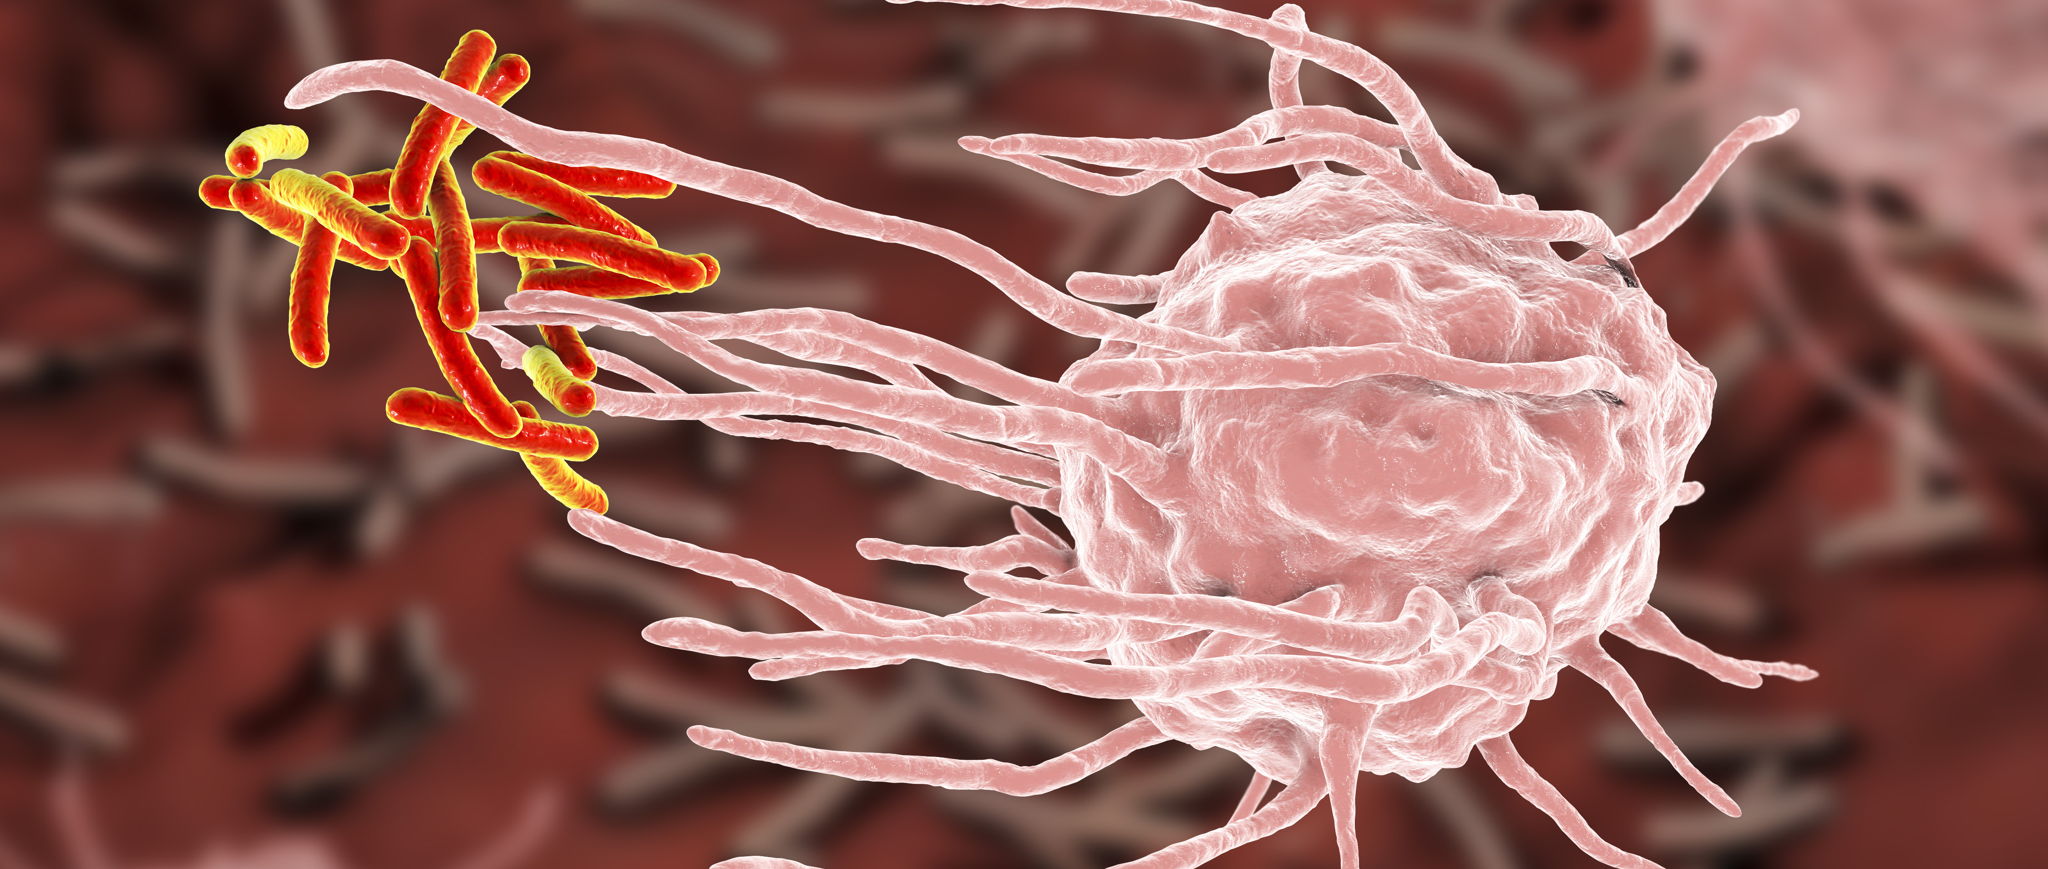 Immuuncel (roze) die bacteriën (rood) 'aanvalt'